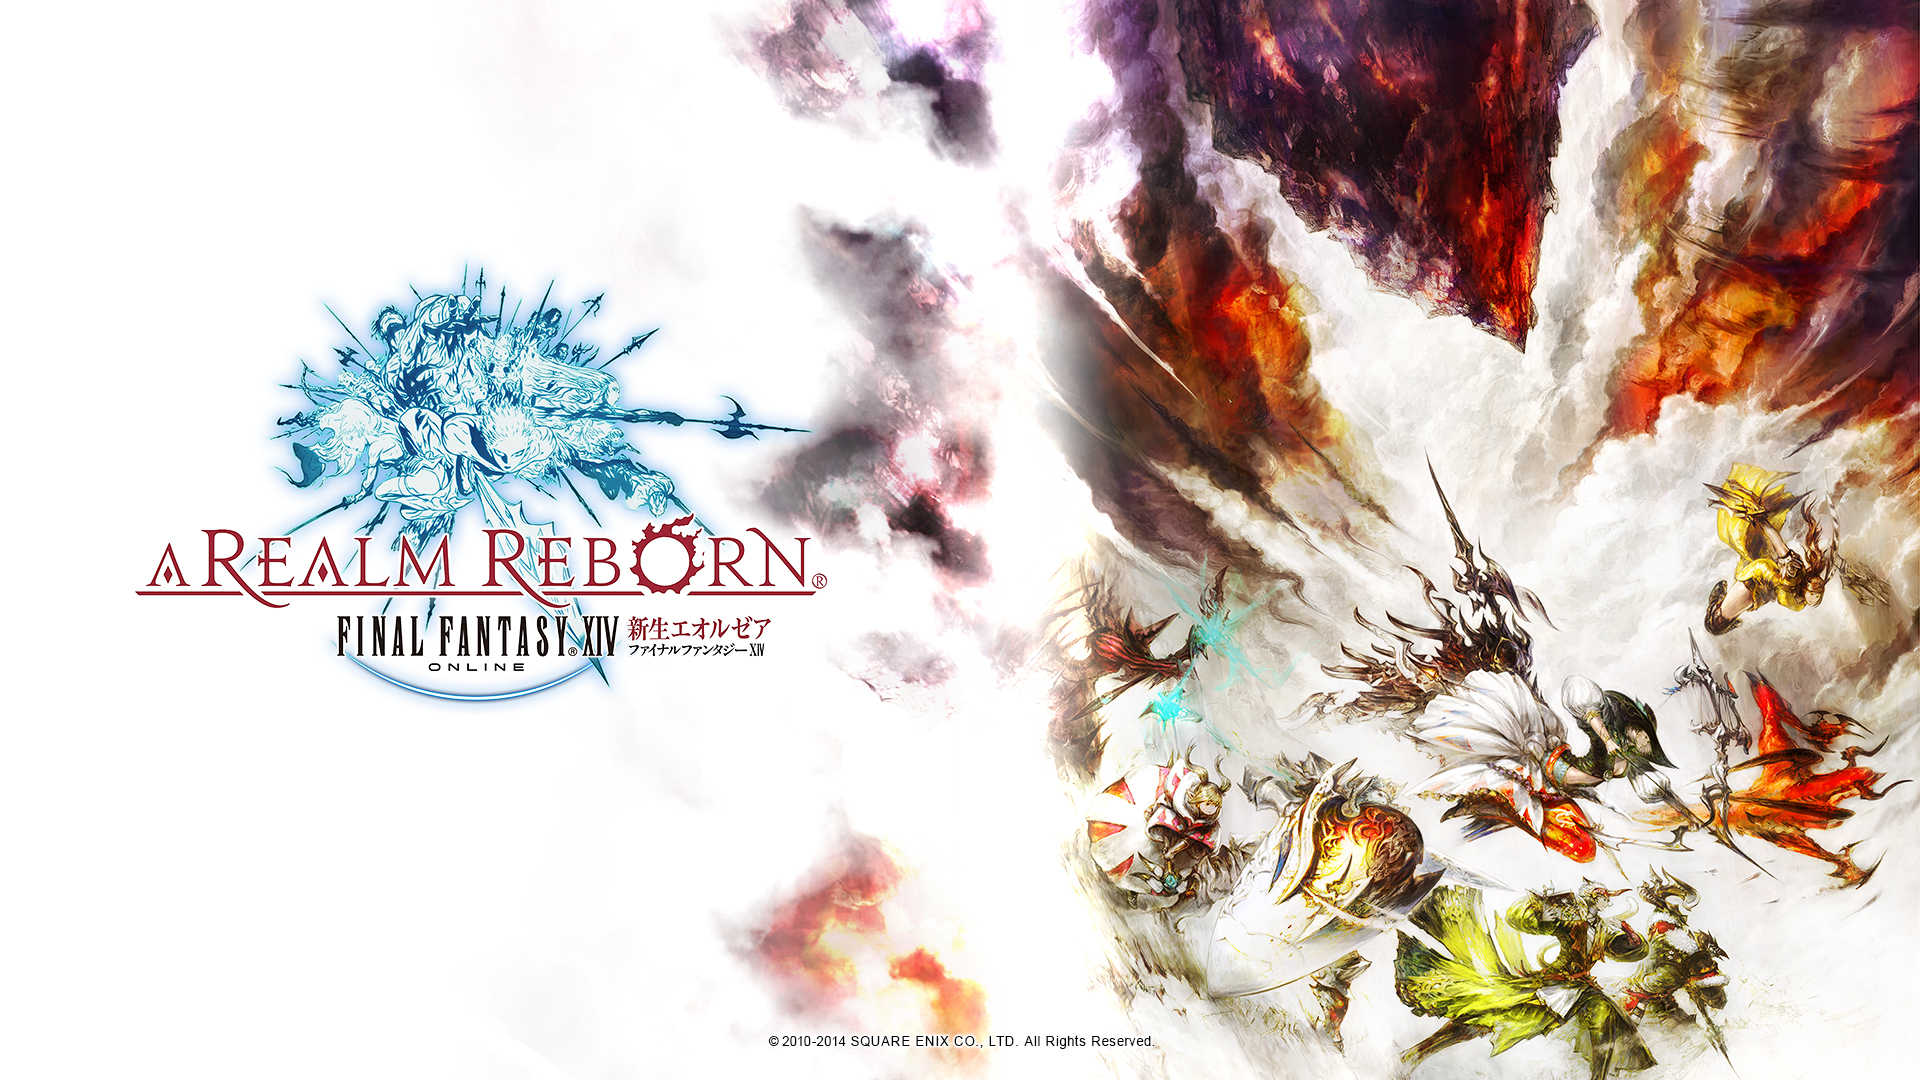 Final Fantasy Xiv Online A Realm Reborn HD Wallpaper